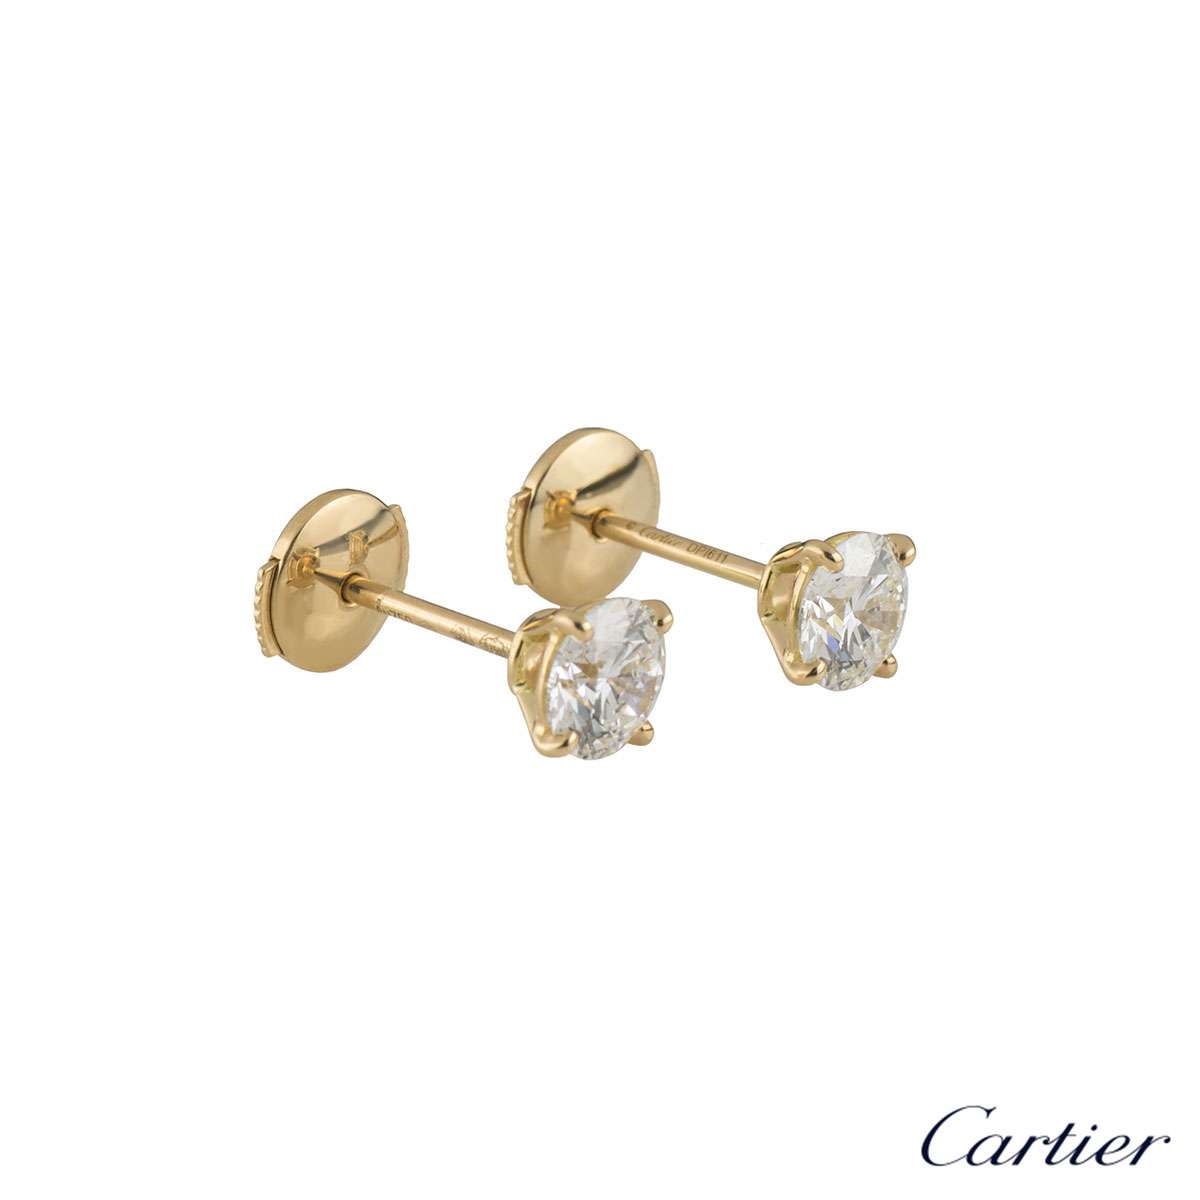 cartier 1895 diamond earrings price